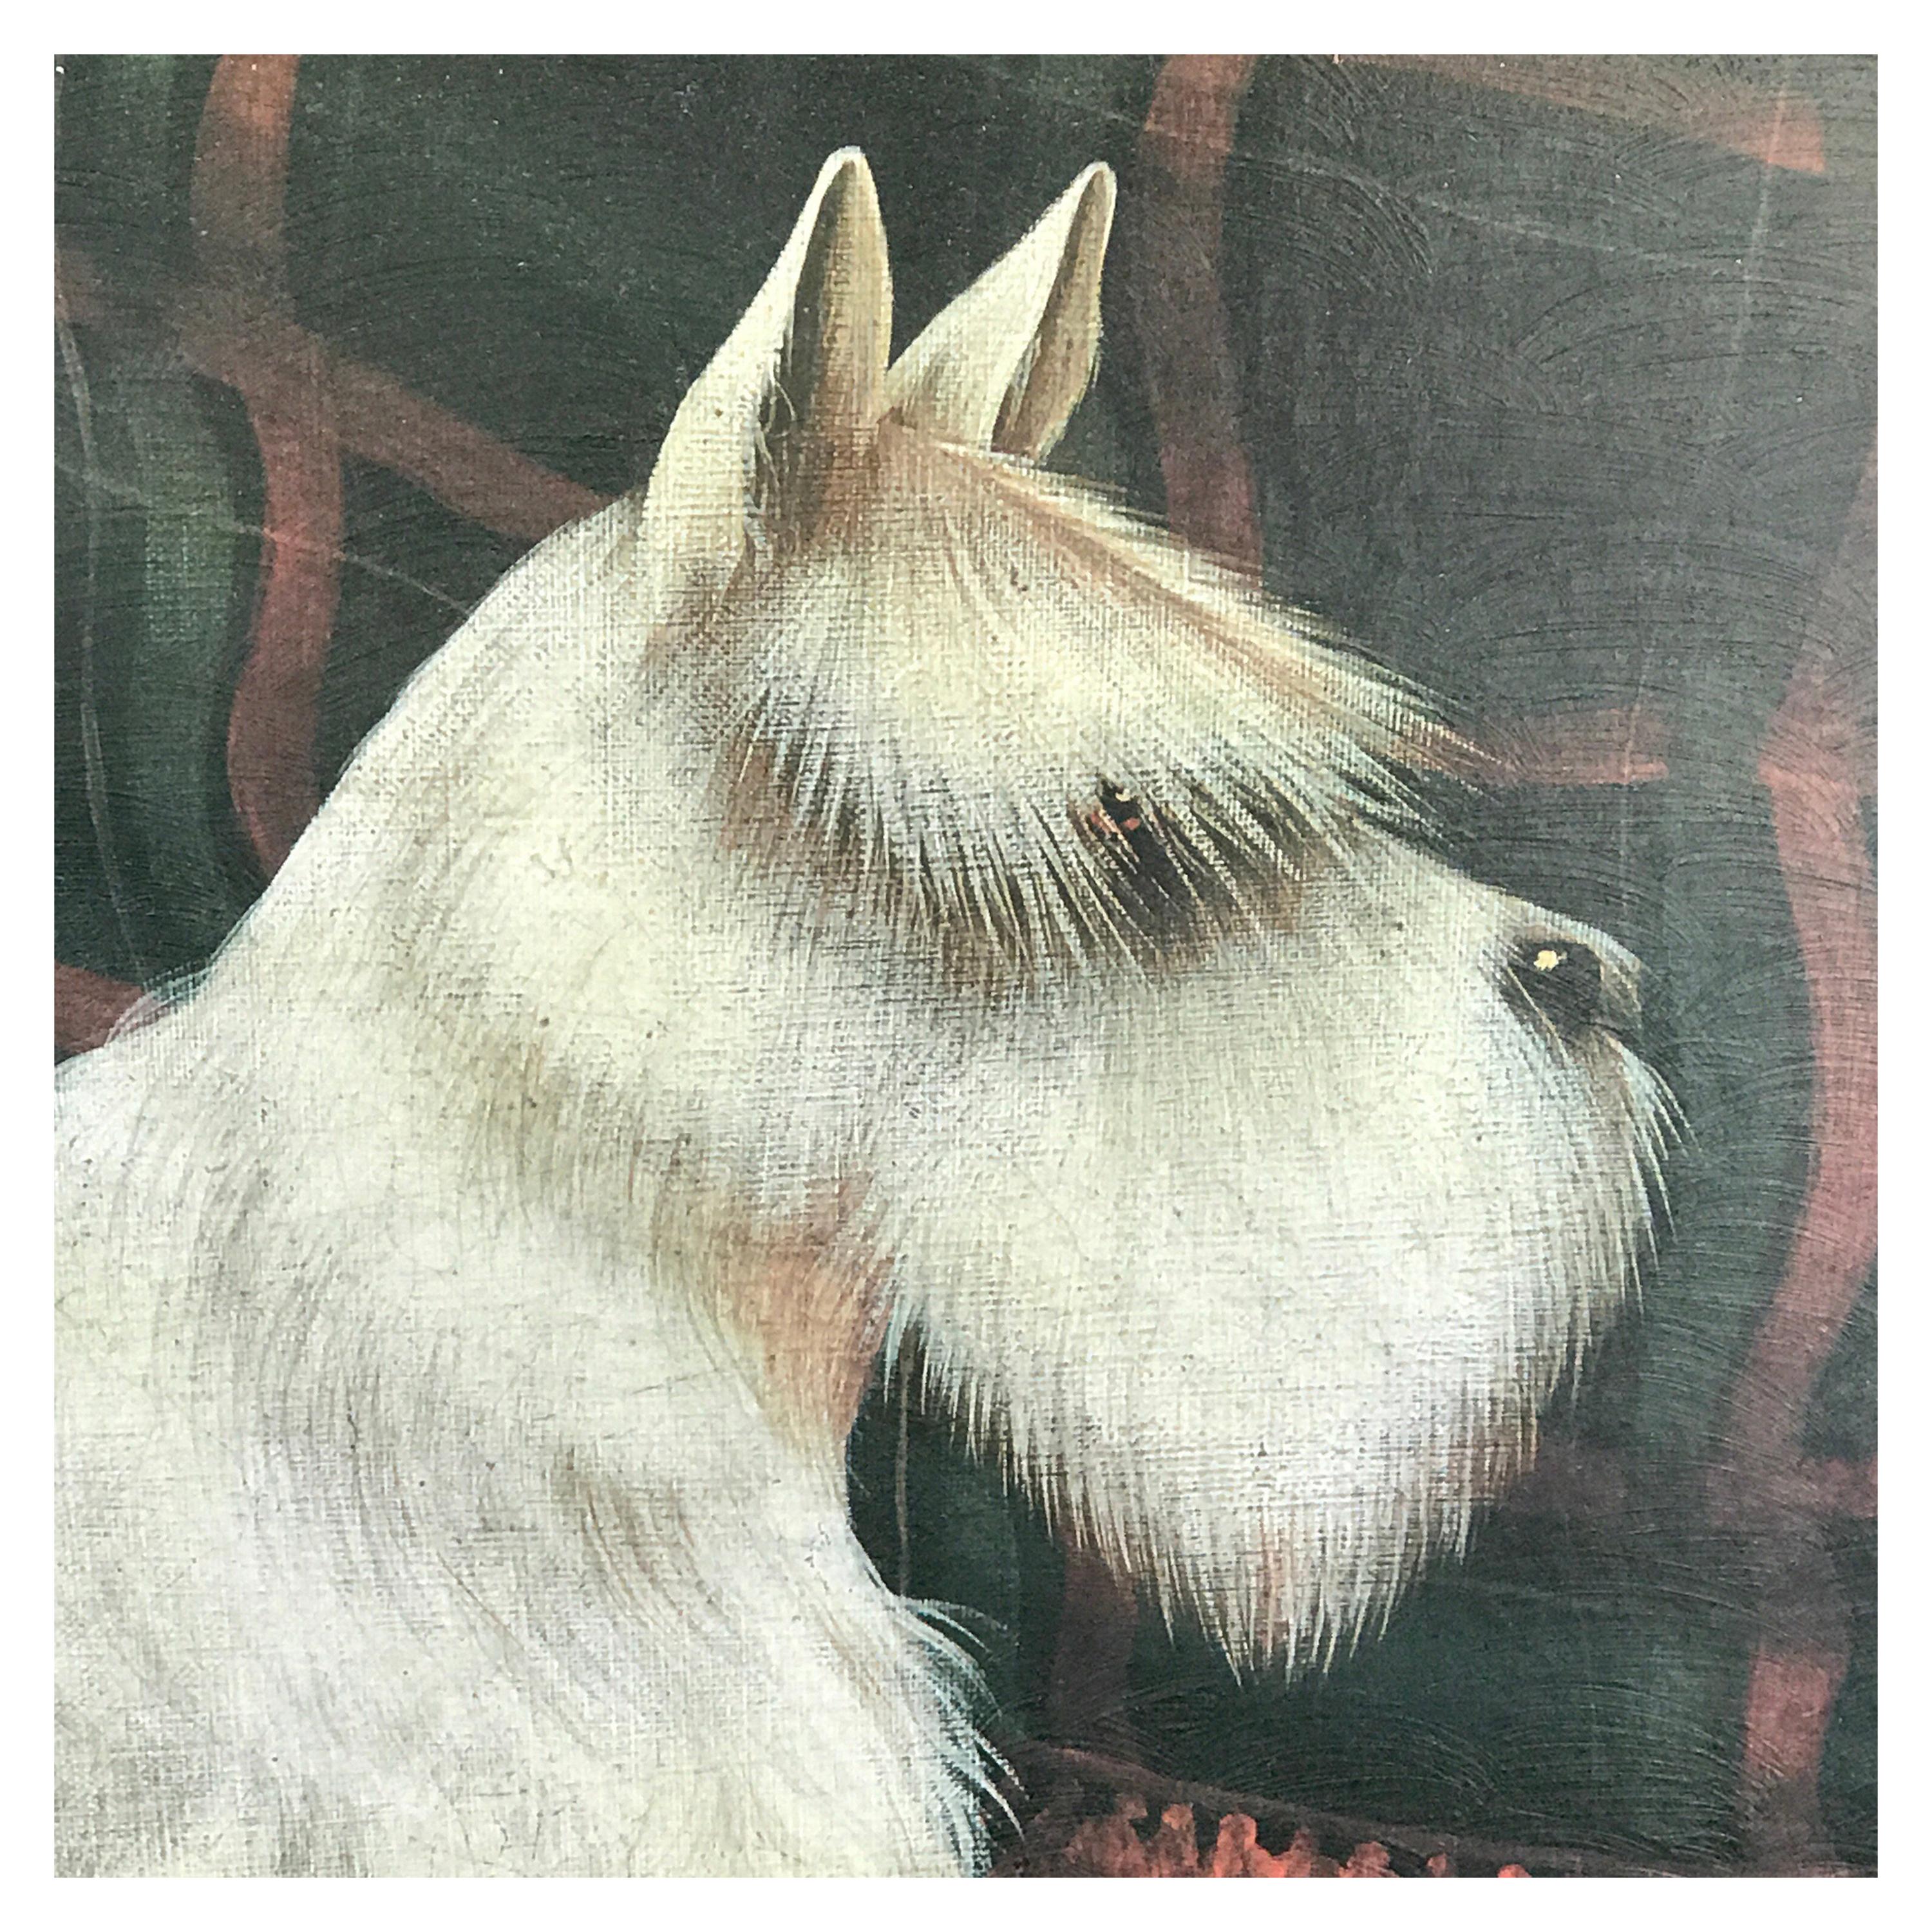 Tableau intérieur de Scottish Terrier blanc:: par Paul Stagg
Représentant un Scotty blanc dans un intérieur drapé de tartan avec le collier en tartan sur le sol
Mesures : 
Huile sur toile 18